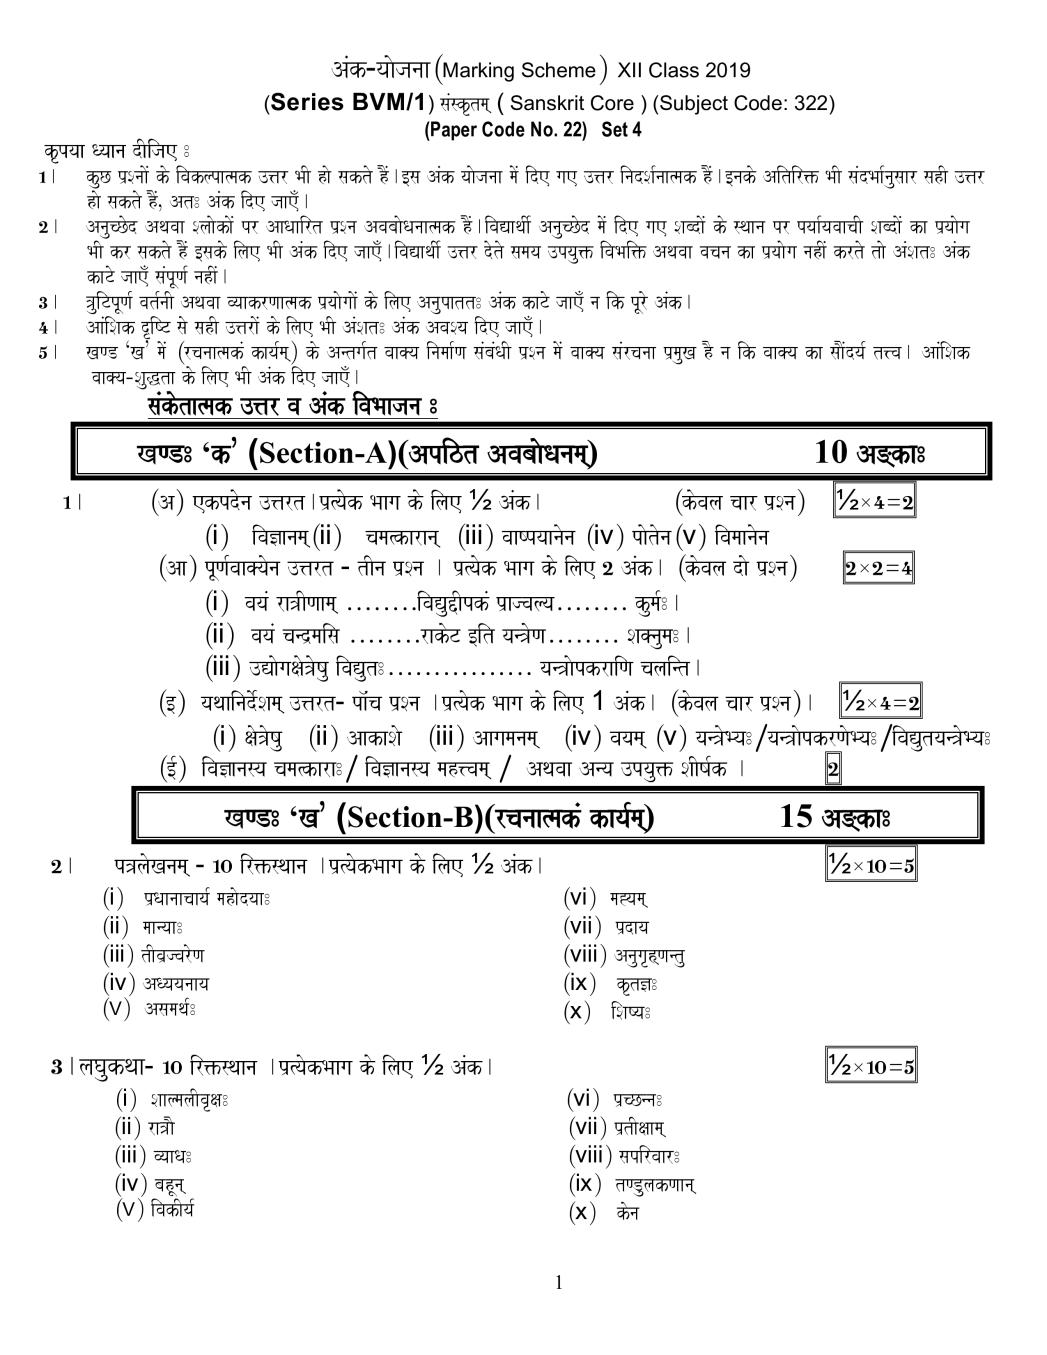 CBSE Class 12 Sanskrit Core Question Paper 2019 Set 1 Solutions - Page 1